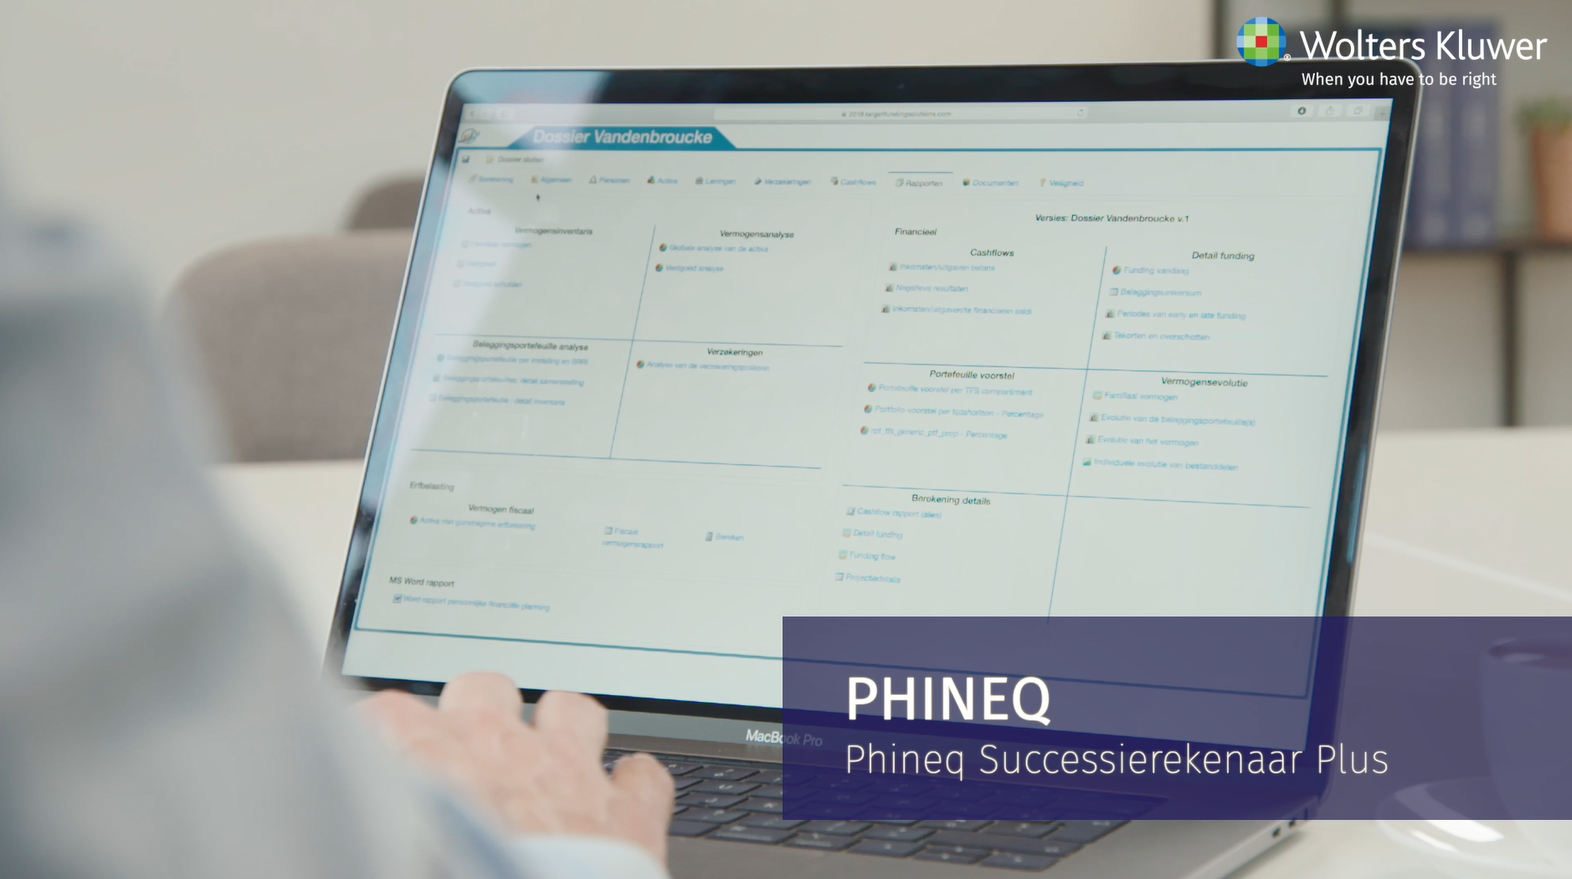 Phineq Successierekenaar Plus video 